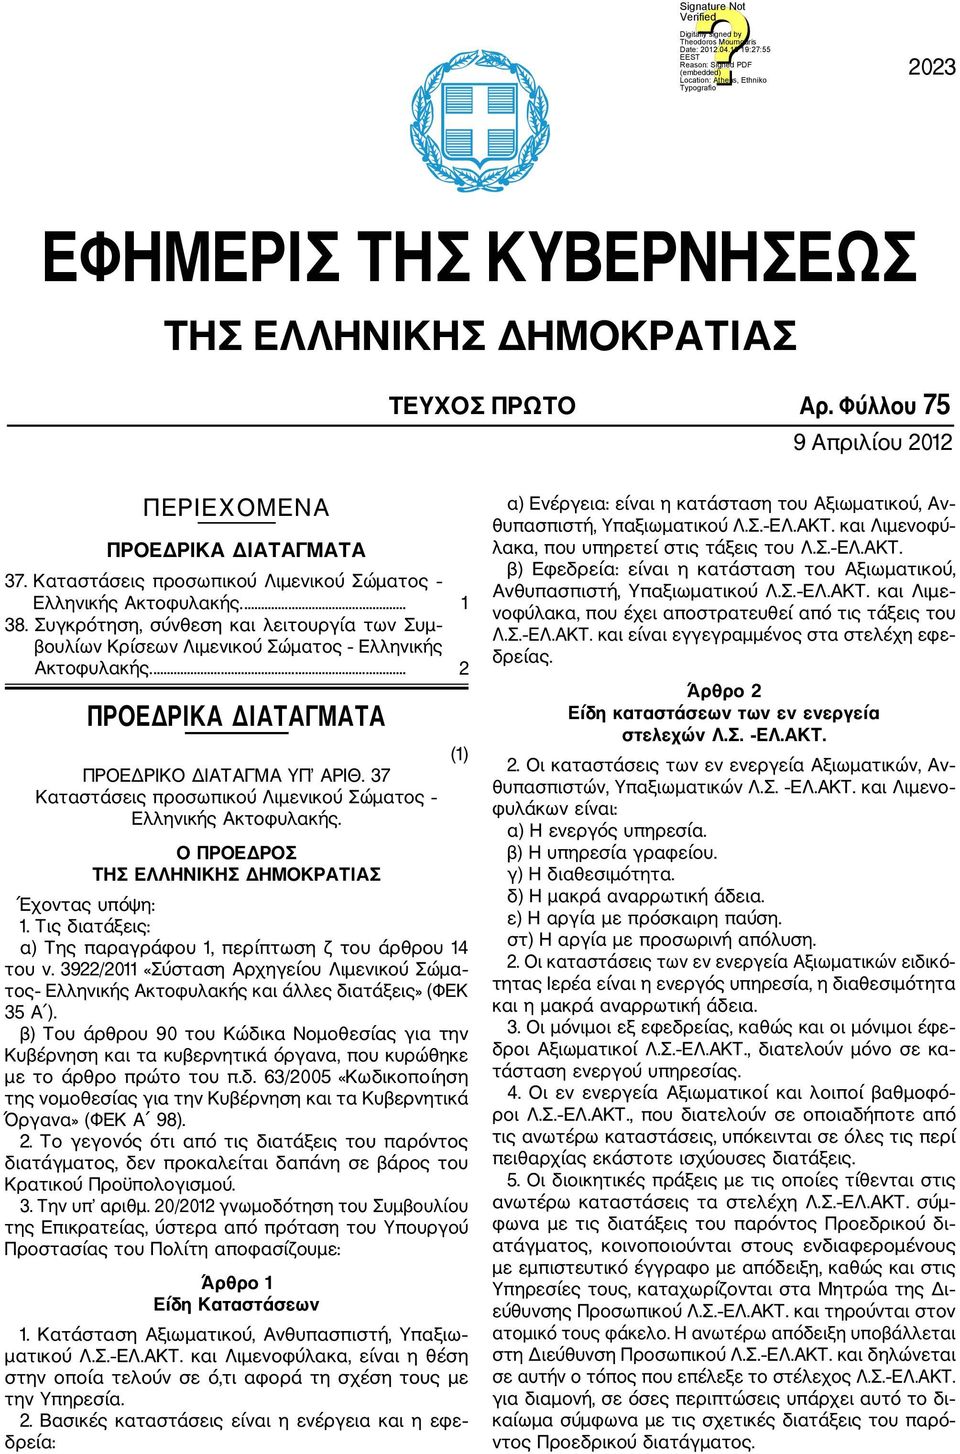 37 Καταστάσεις προσωπικού Λιμενικού Σώματος Ελληνικής Ακτοφυλακής. Ο ΠΡΟΕΔΡΟΣ ΤΗΣ ΕΛΛΗΝΙΚΗΣ ΔΗΜΟΚΡΑΤΙΑΣ Έχοντας υπόψη: 1. Τις διατάξεις: α) Της παραγράφου 1, περίπτωση ζ του άρθρου 14 του ν.